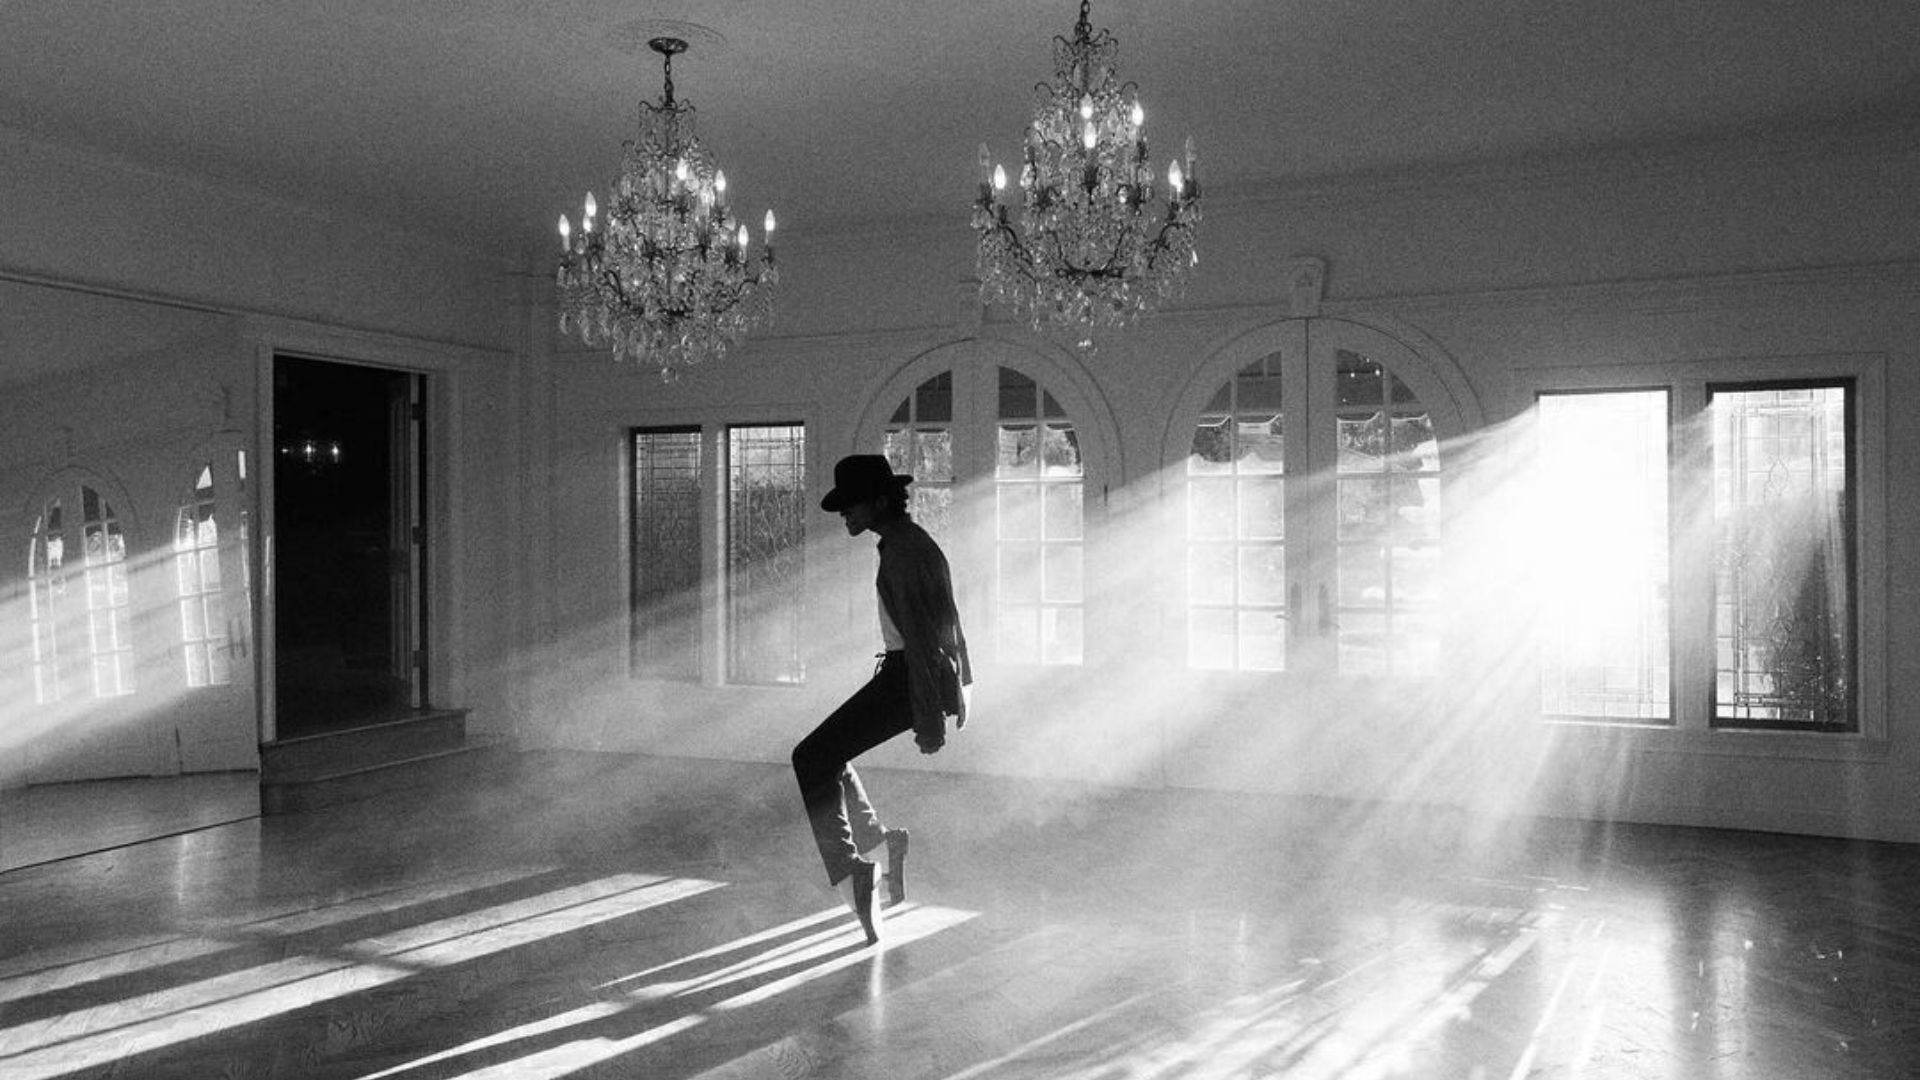 Michael, cinebiografia de Michael Jackson, acompanhará as vidas pessoal e profissional do eterno Rei do Pop (Foto: Divulgação)